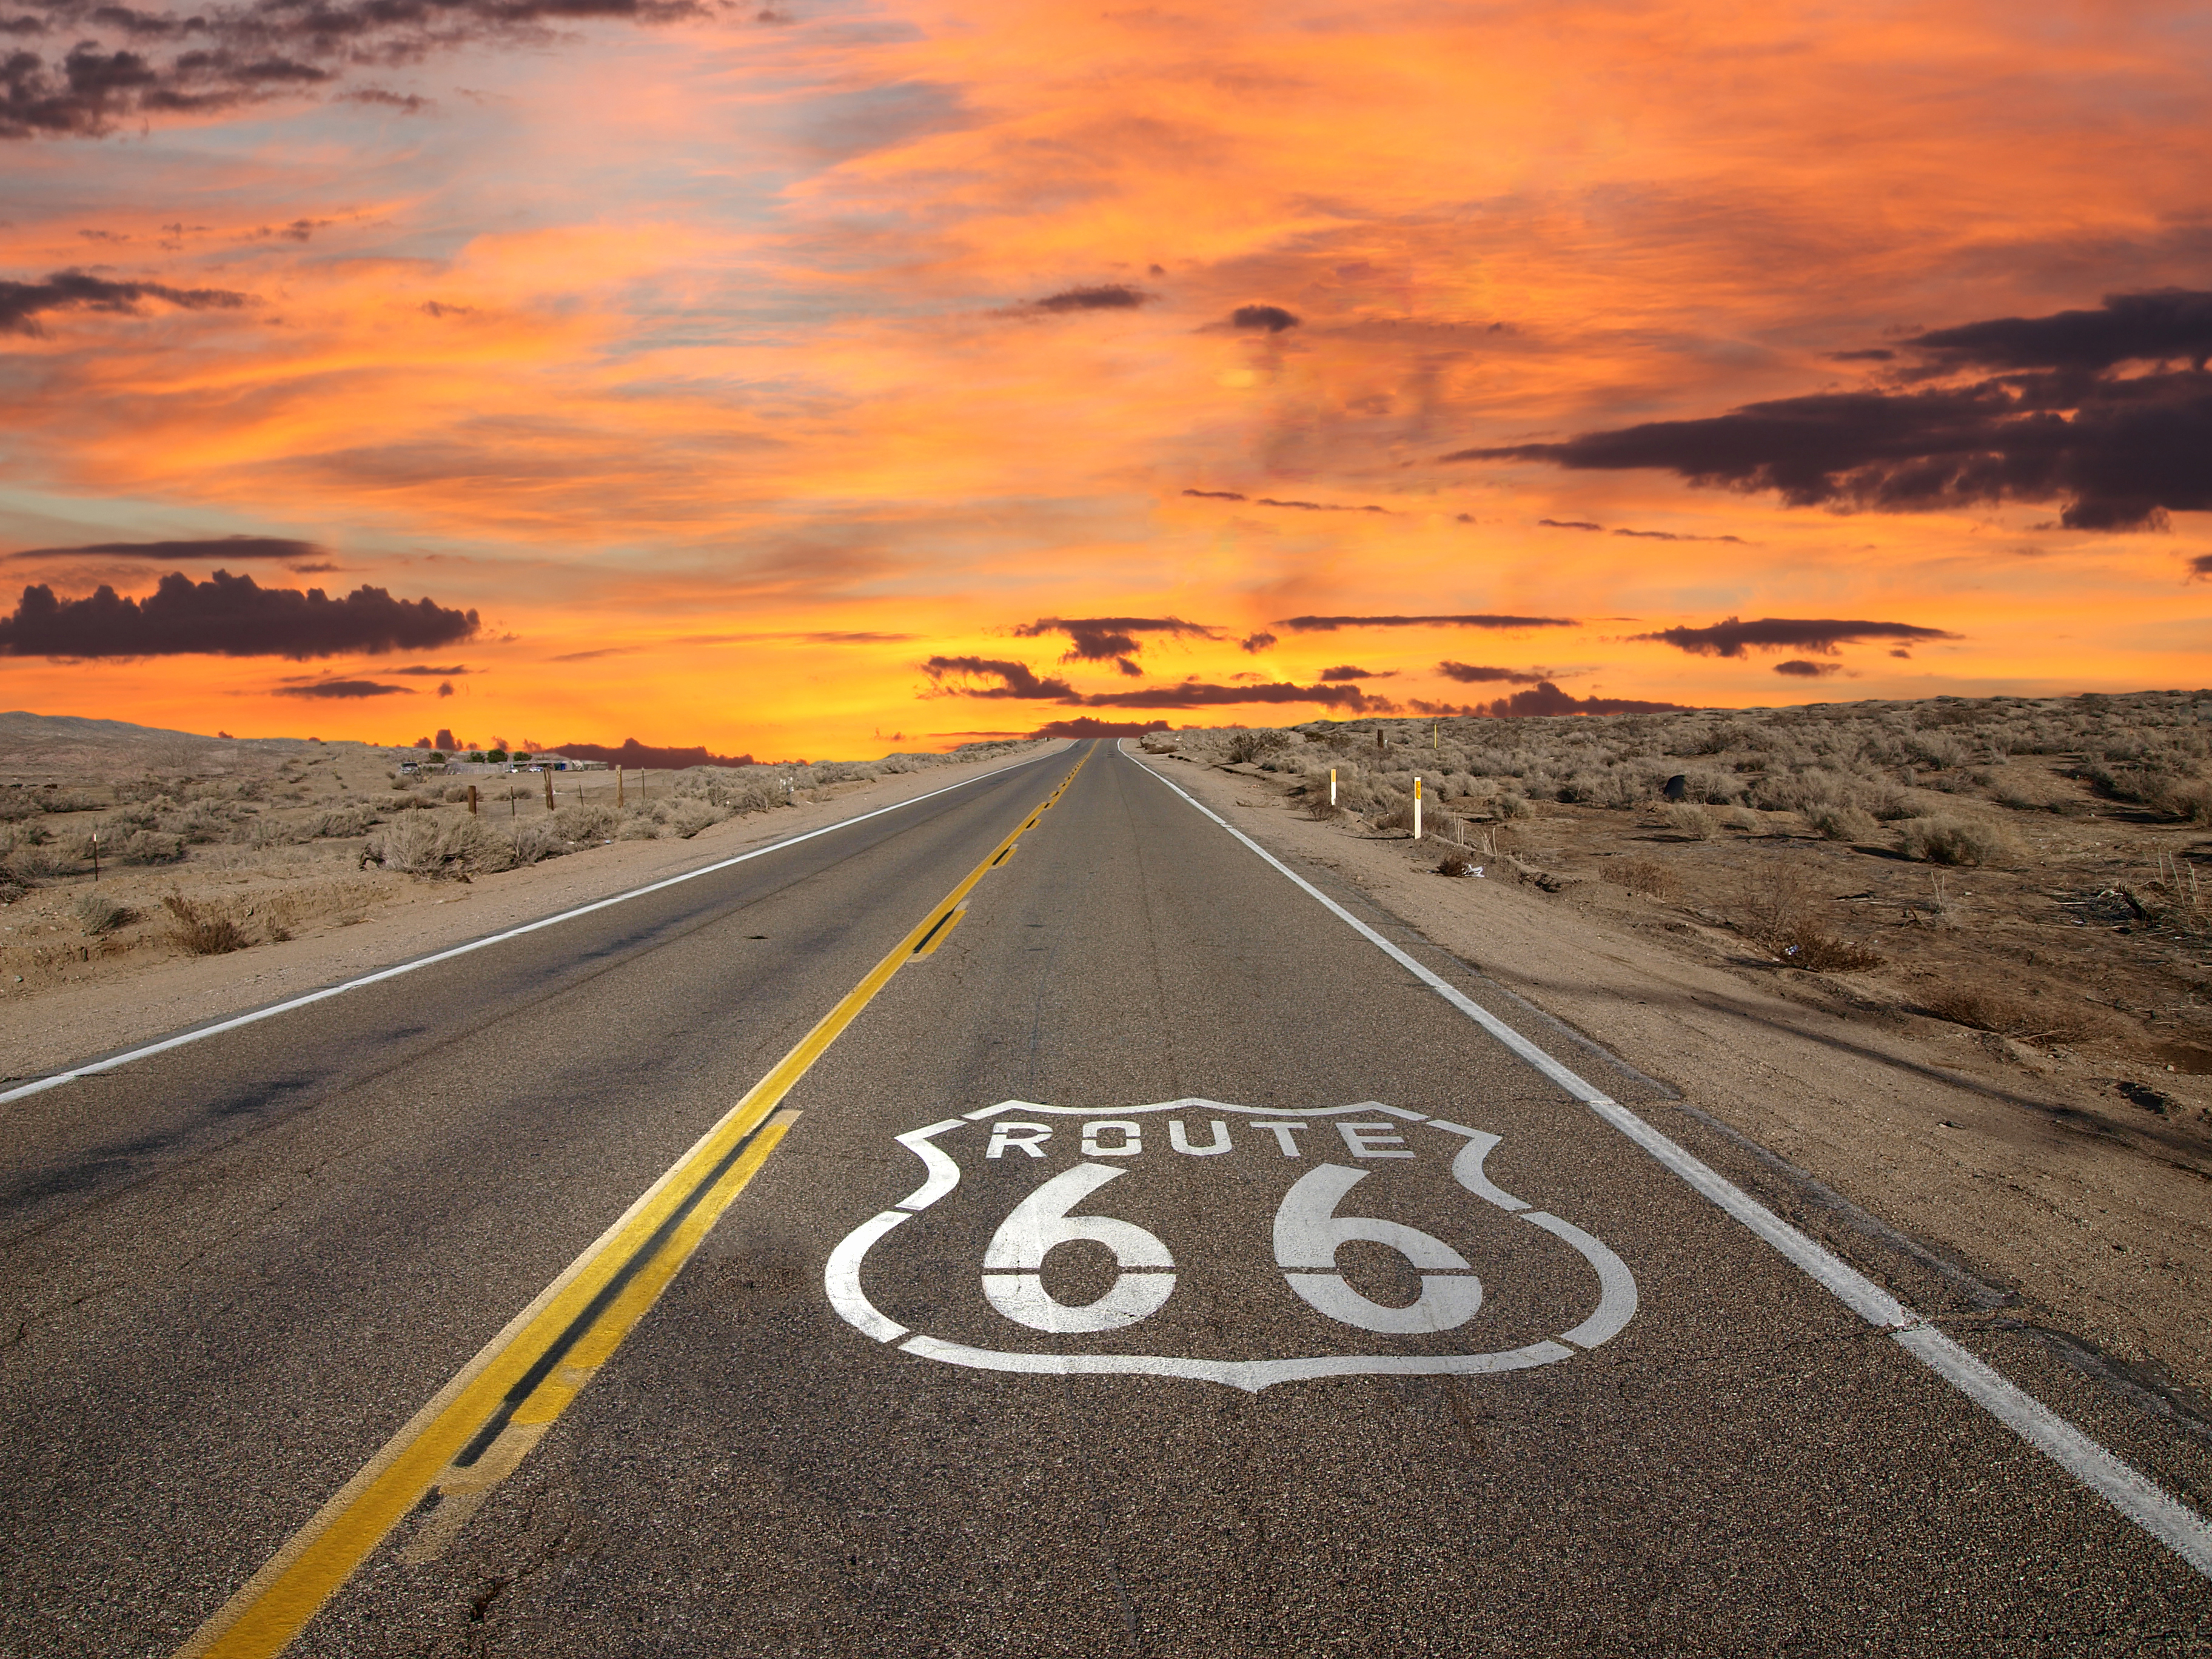 U.S. Route 66 